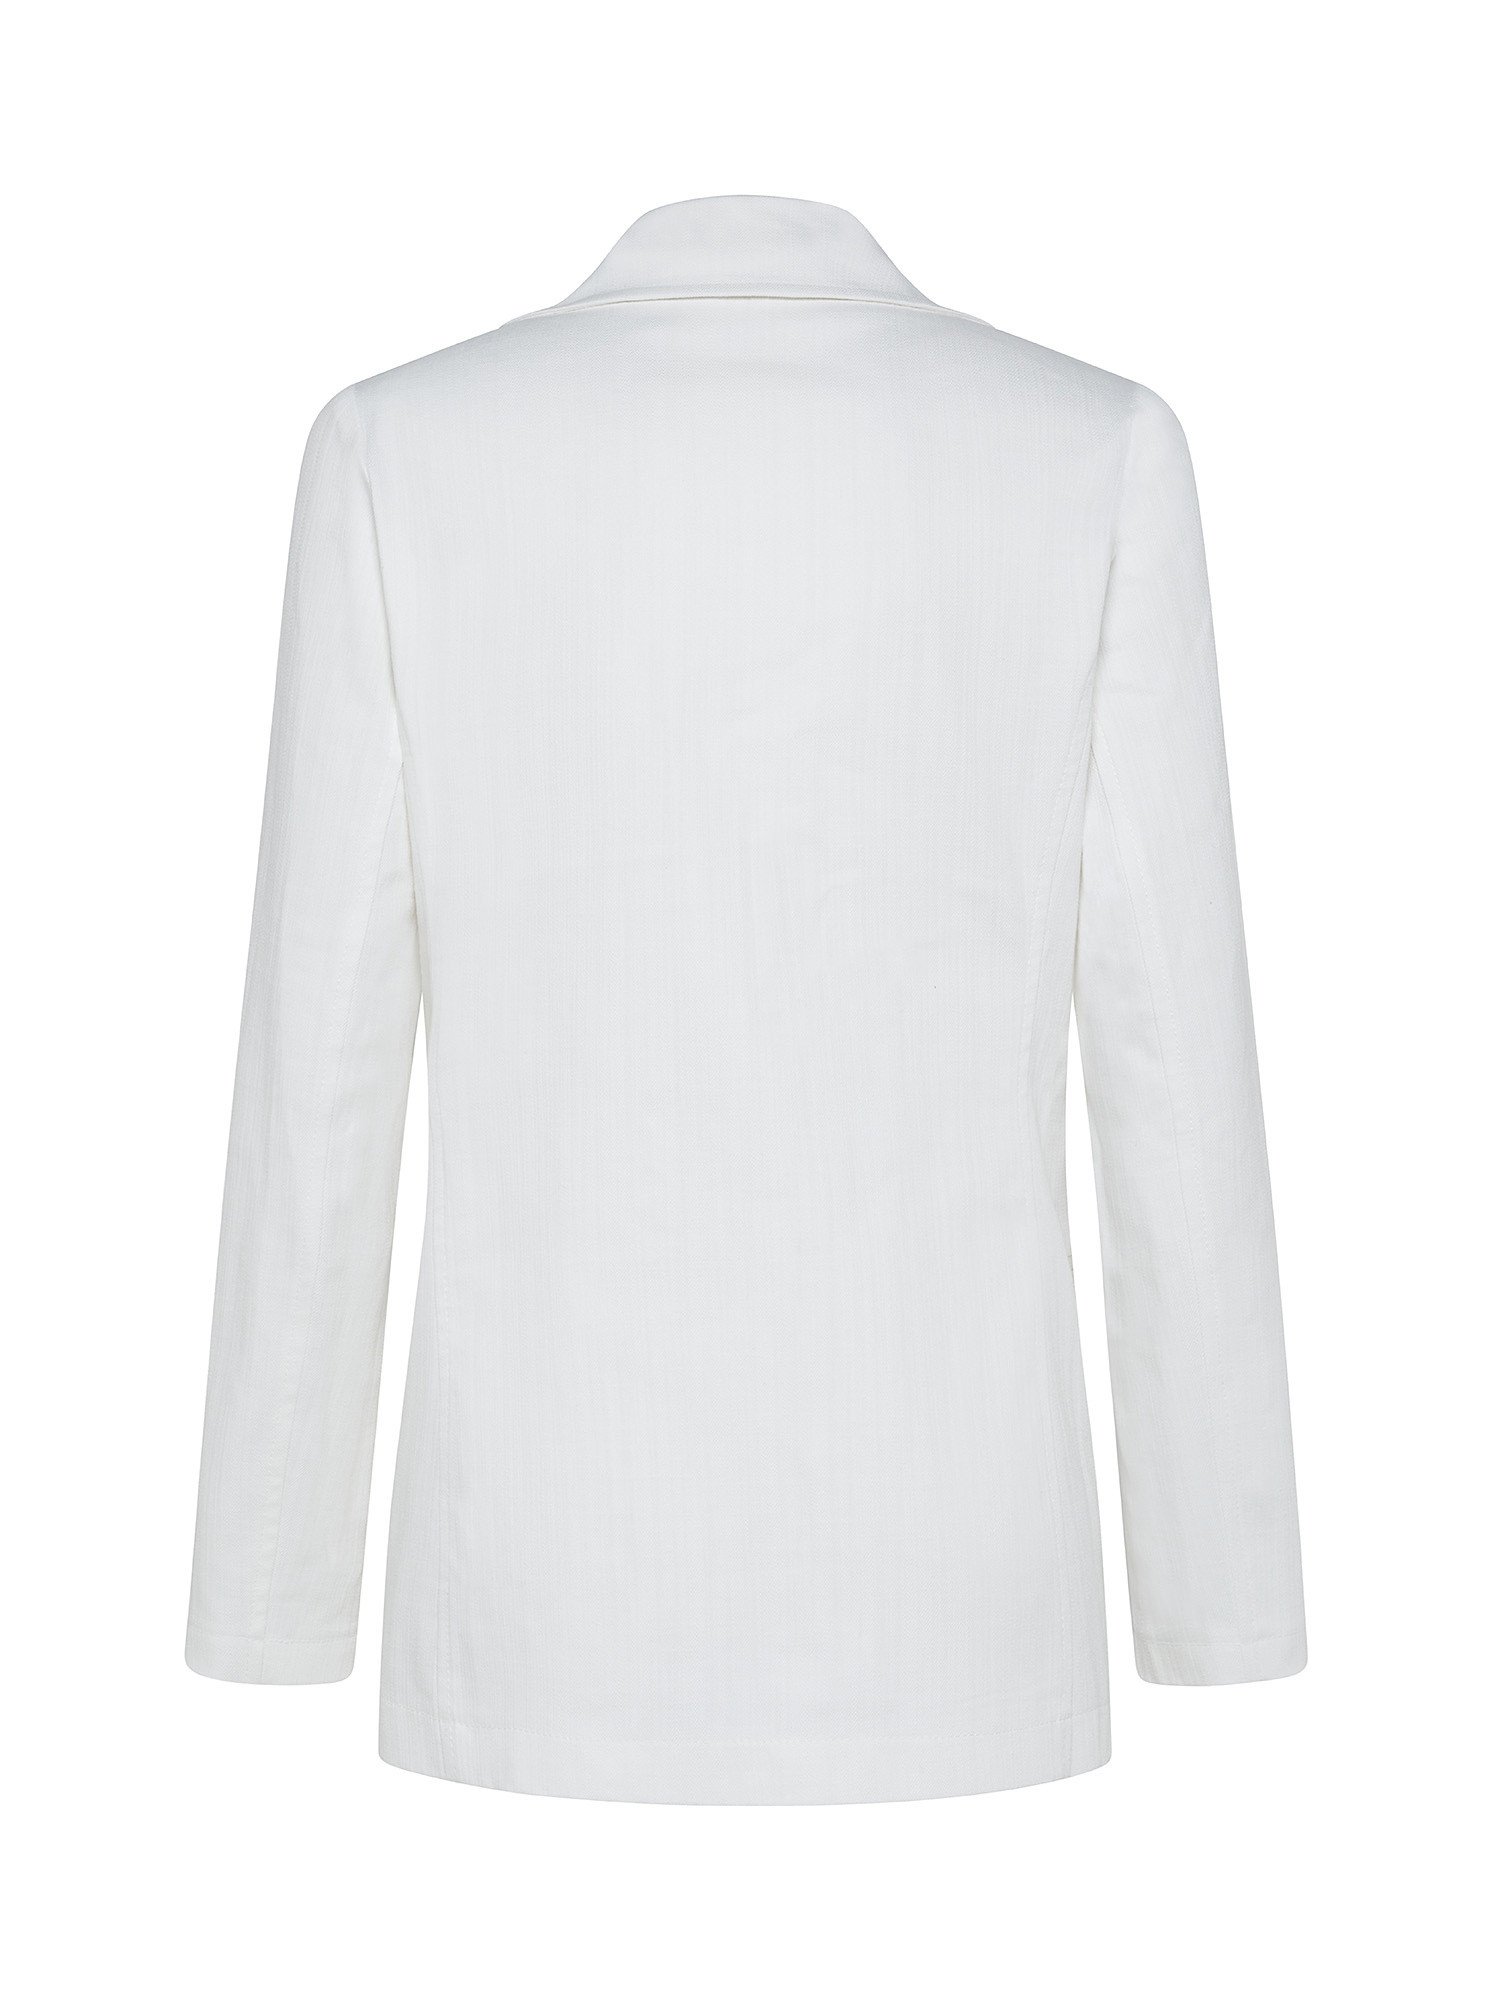 Denim jacket, White, large image number 1